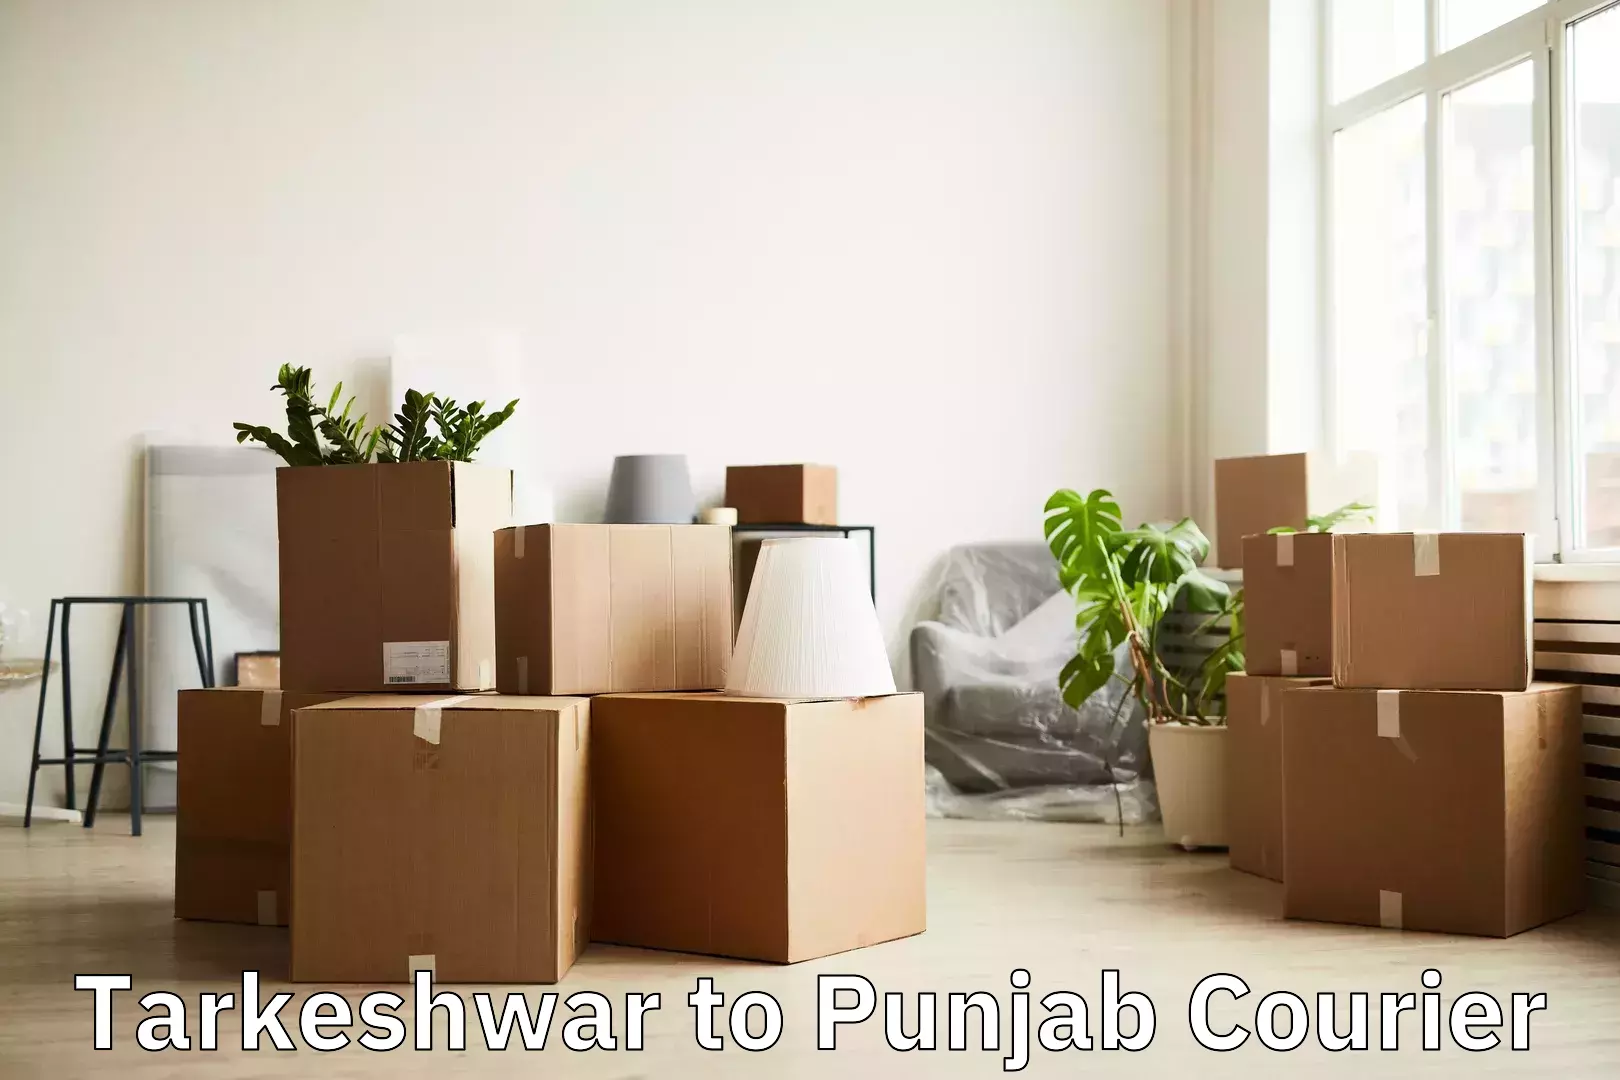 Luggage transfer service Tarkeshwar to Punjab